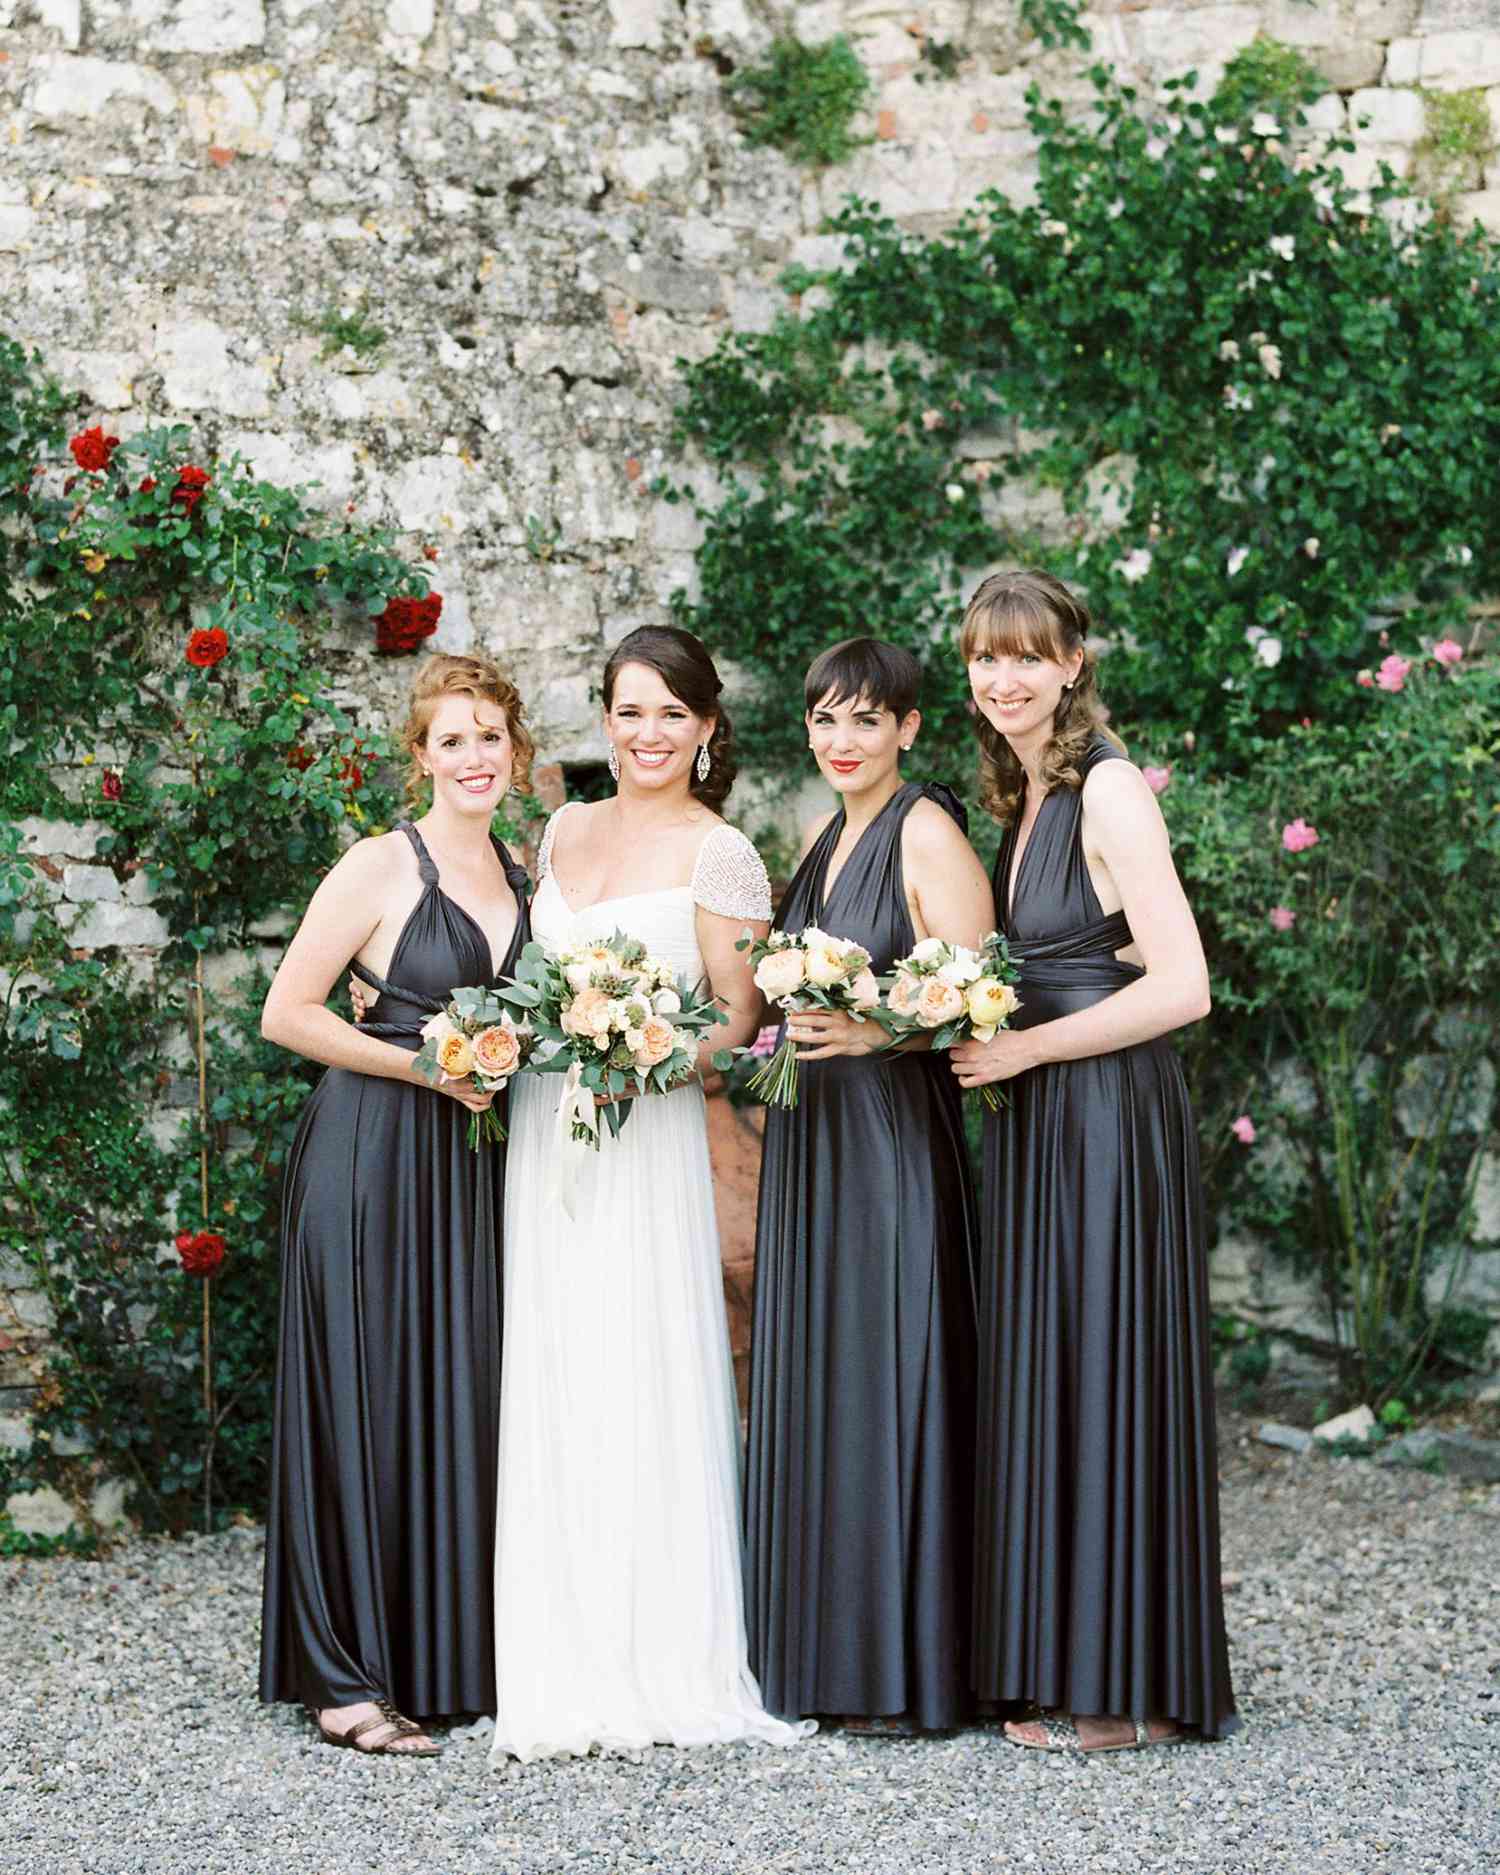 lauren-ollie-wedding-bridesmaids-450-s111895-0515.jpg